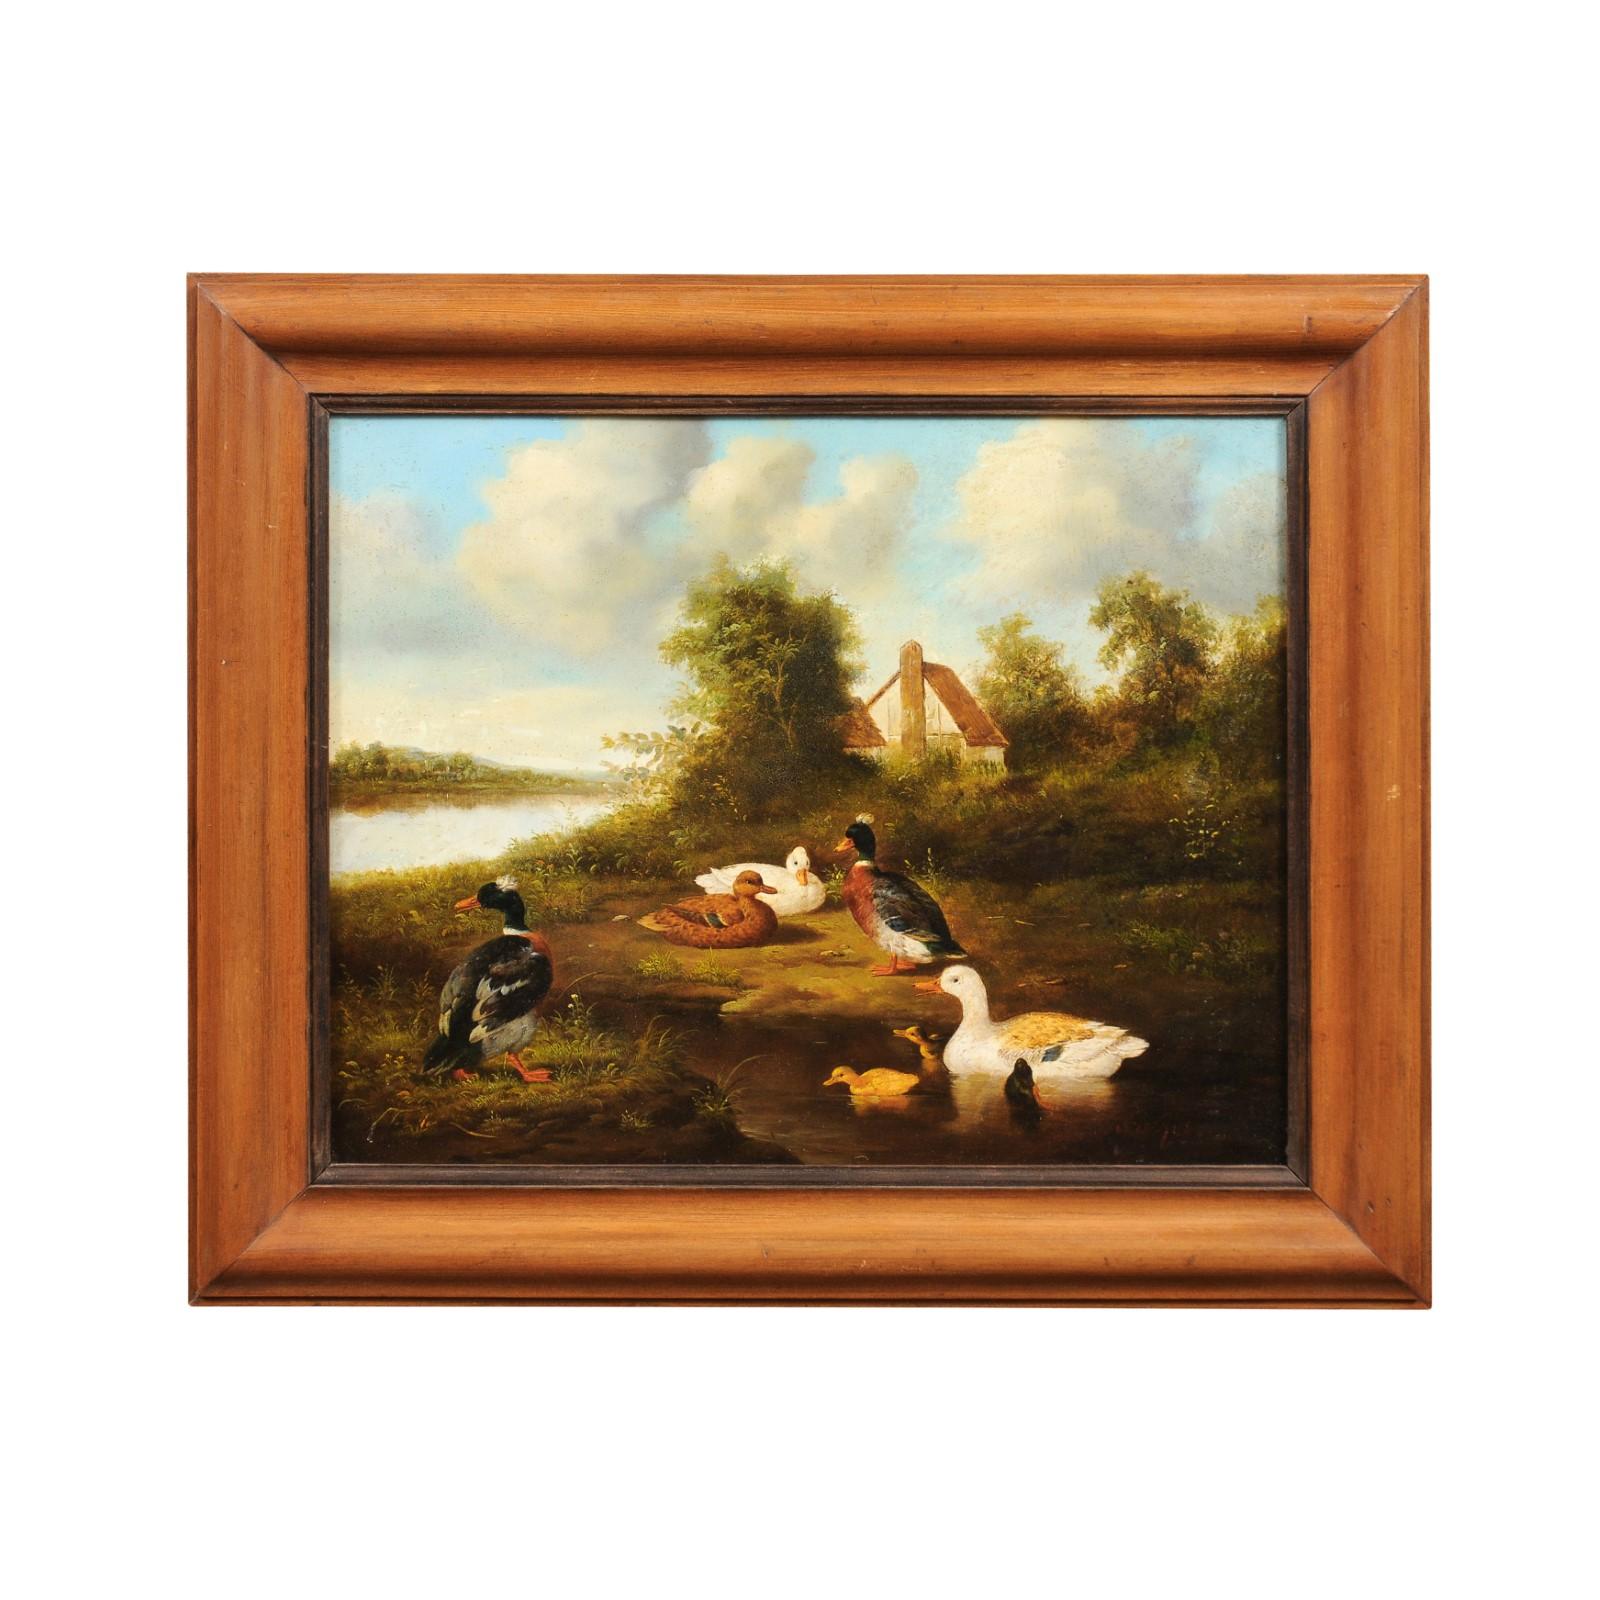 Peinture de basse-cour à l'huile sur panneau du milieu du XIXe siècle, représentant des canards dans un paysage. Créée en France dans les années 1850, cette huile sur panneau représente une scène paisible. Présentant des couleurs vibrantes et